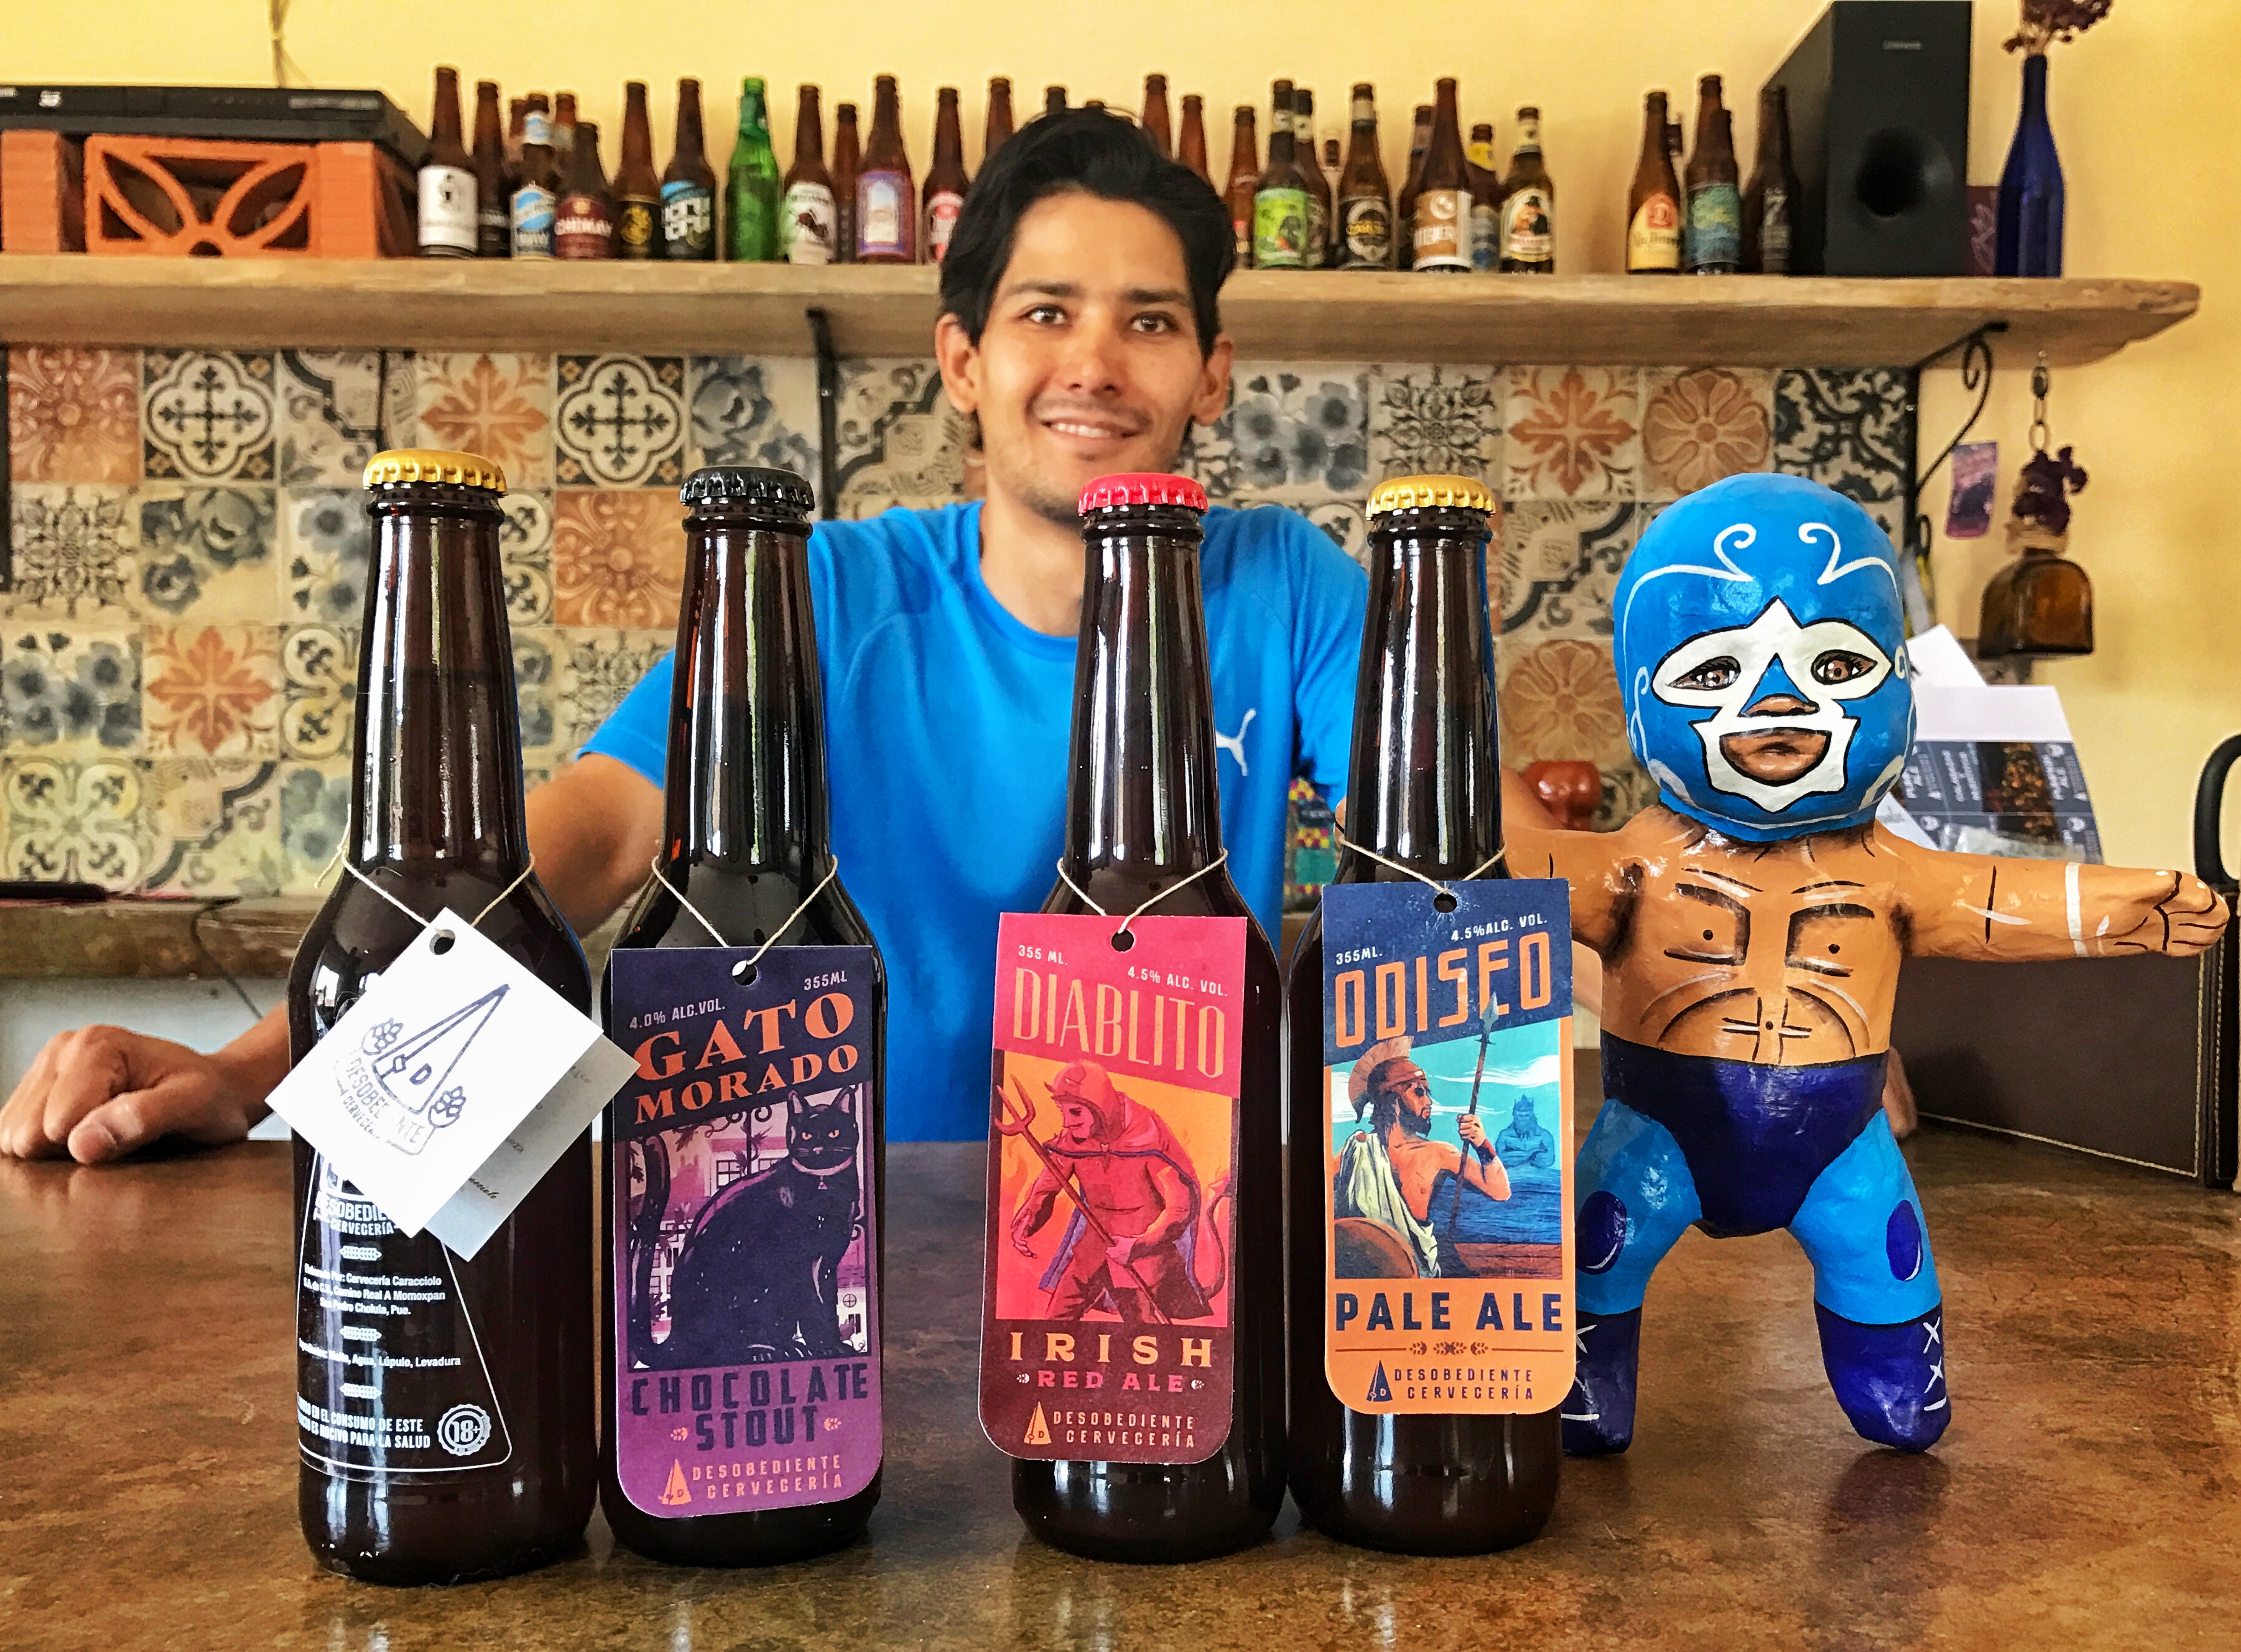 Cerveza artesanal en Puebla